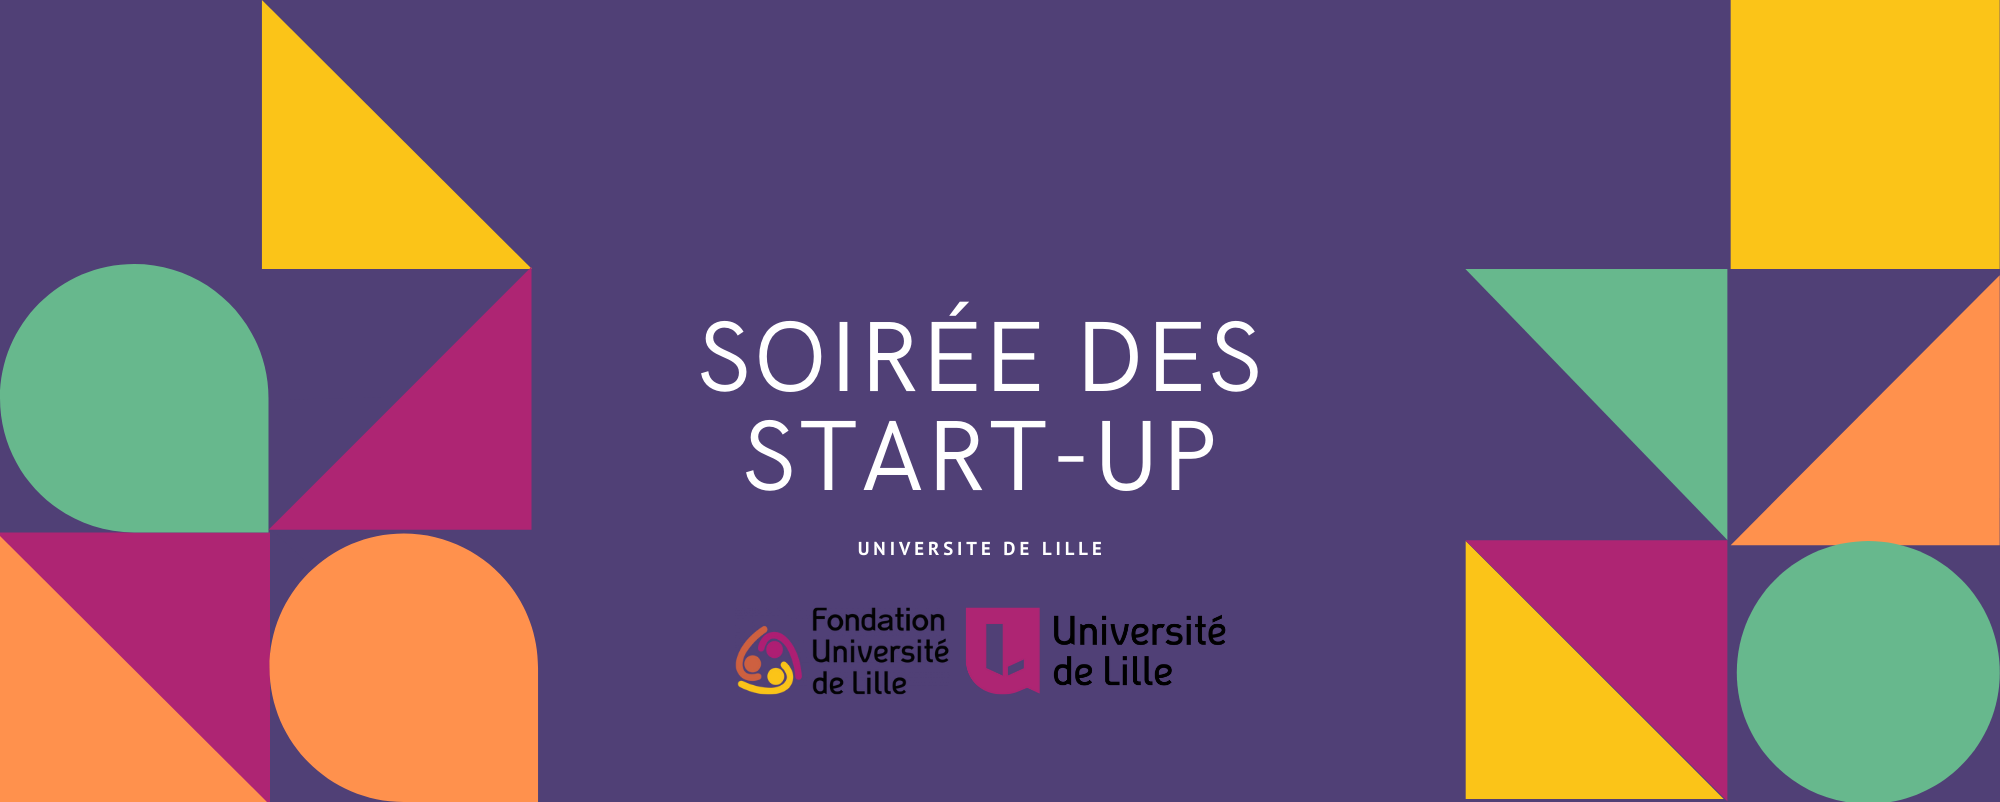 Soirée des startups de l’Université de Lille.